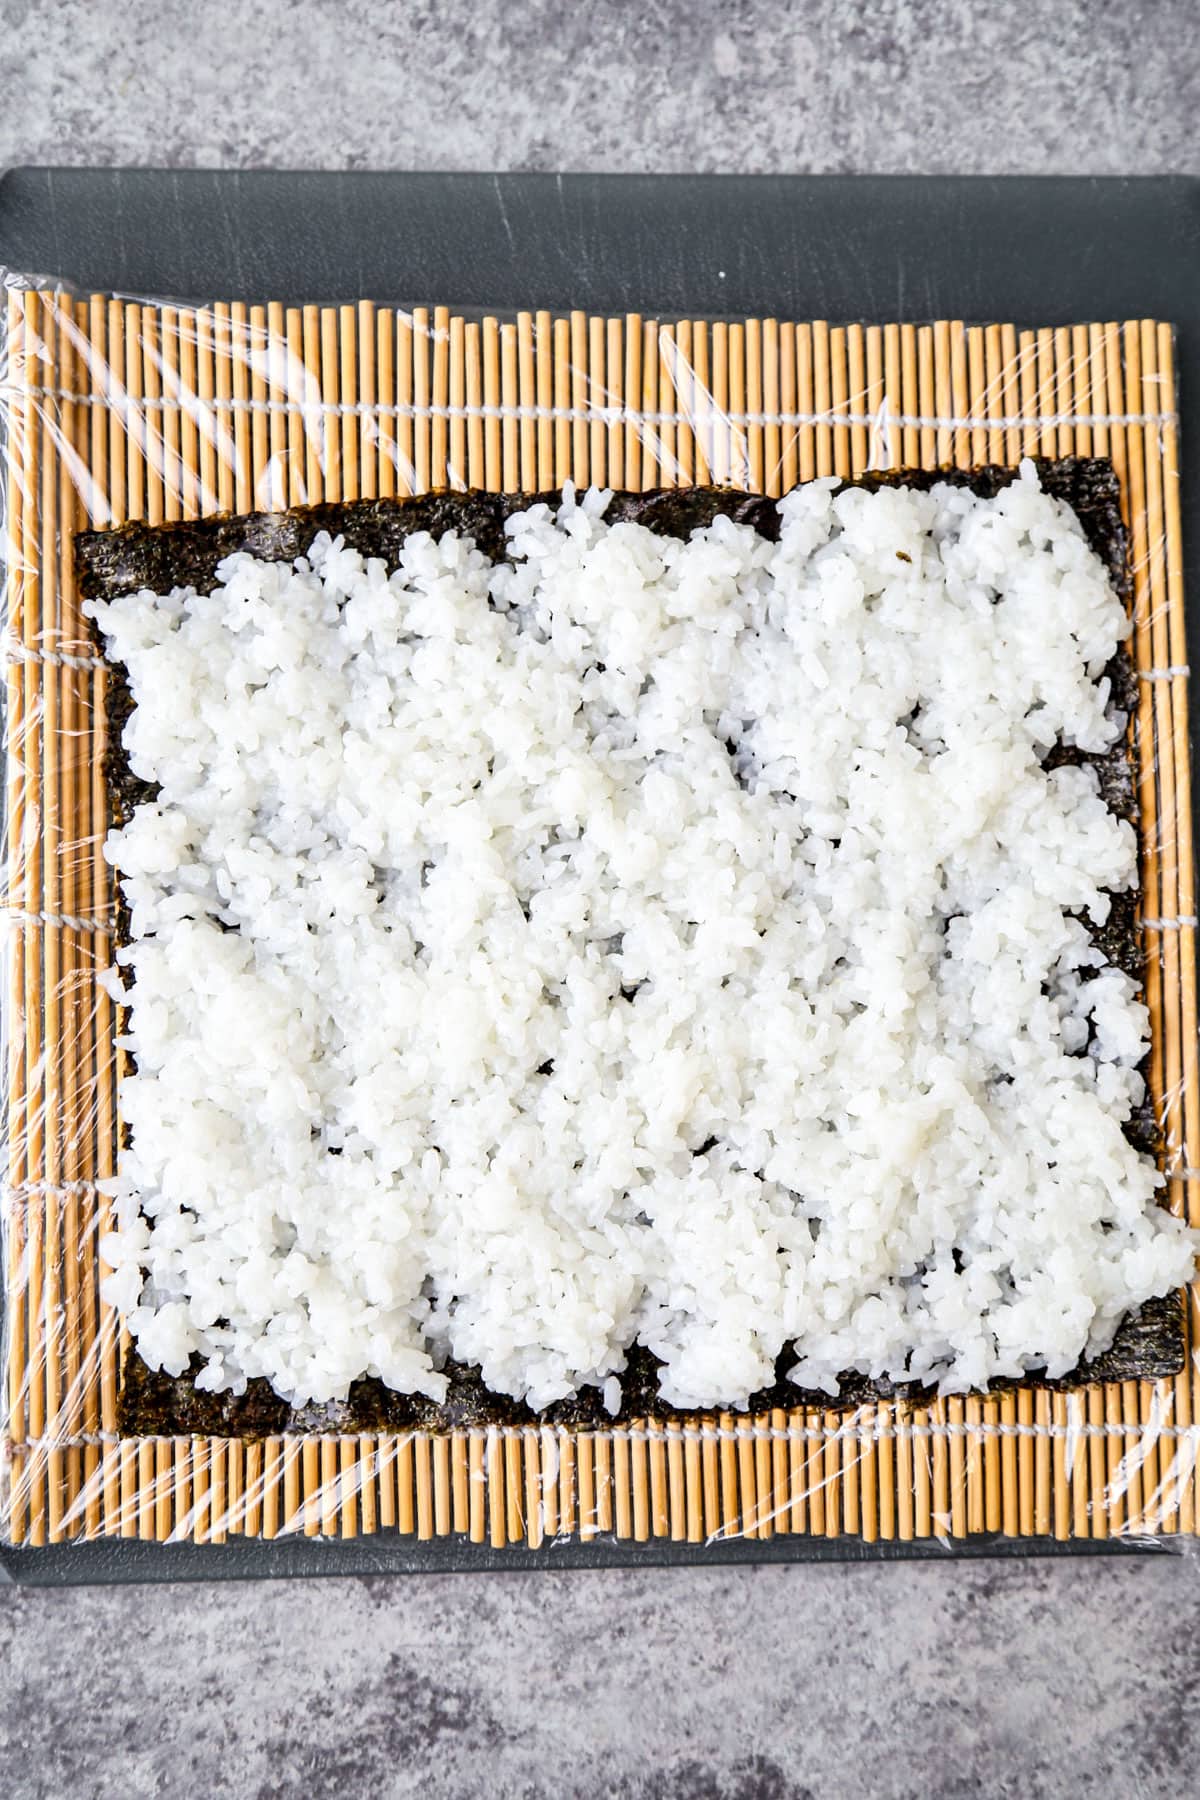 nori sheet and rice over bamboo mat